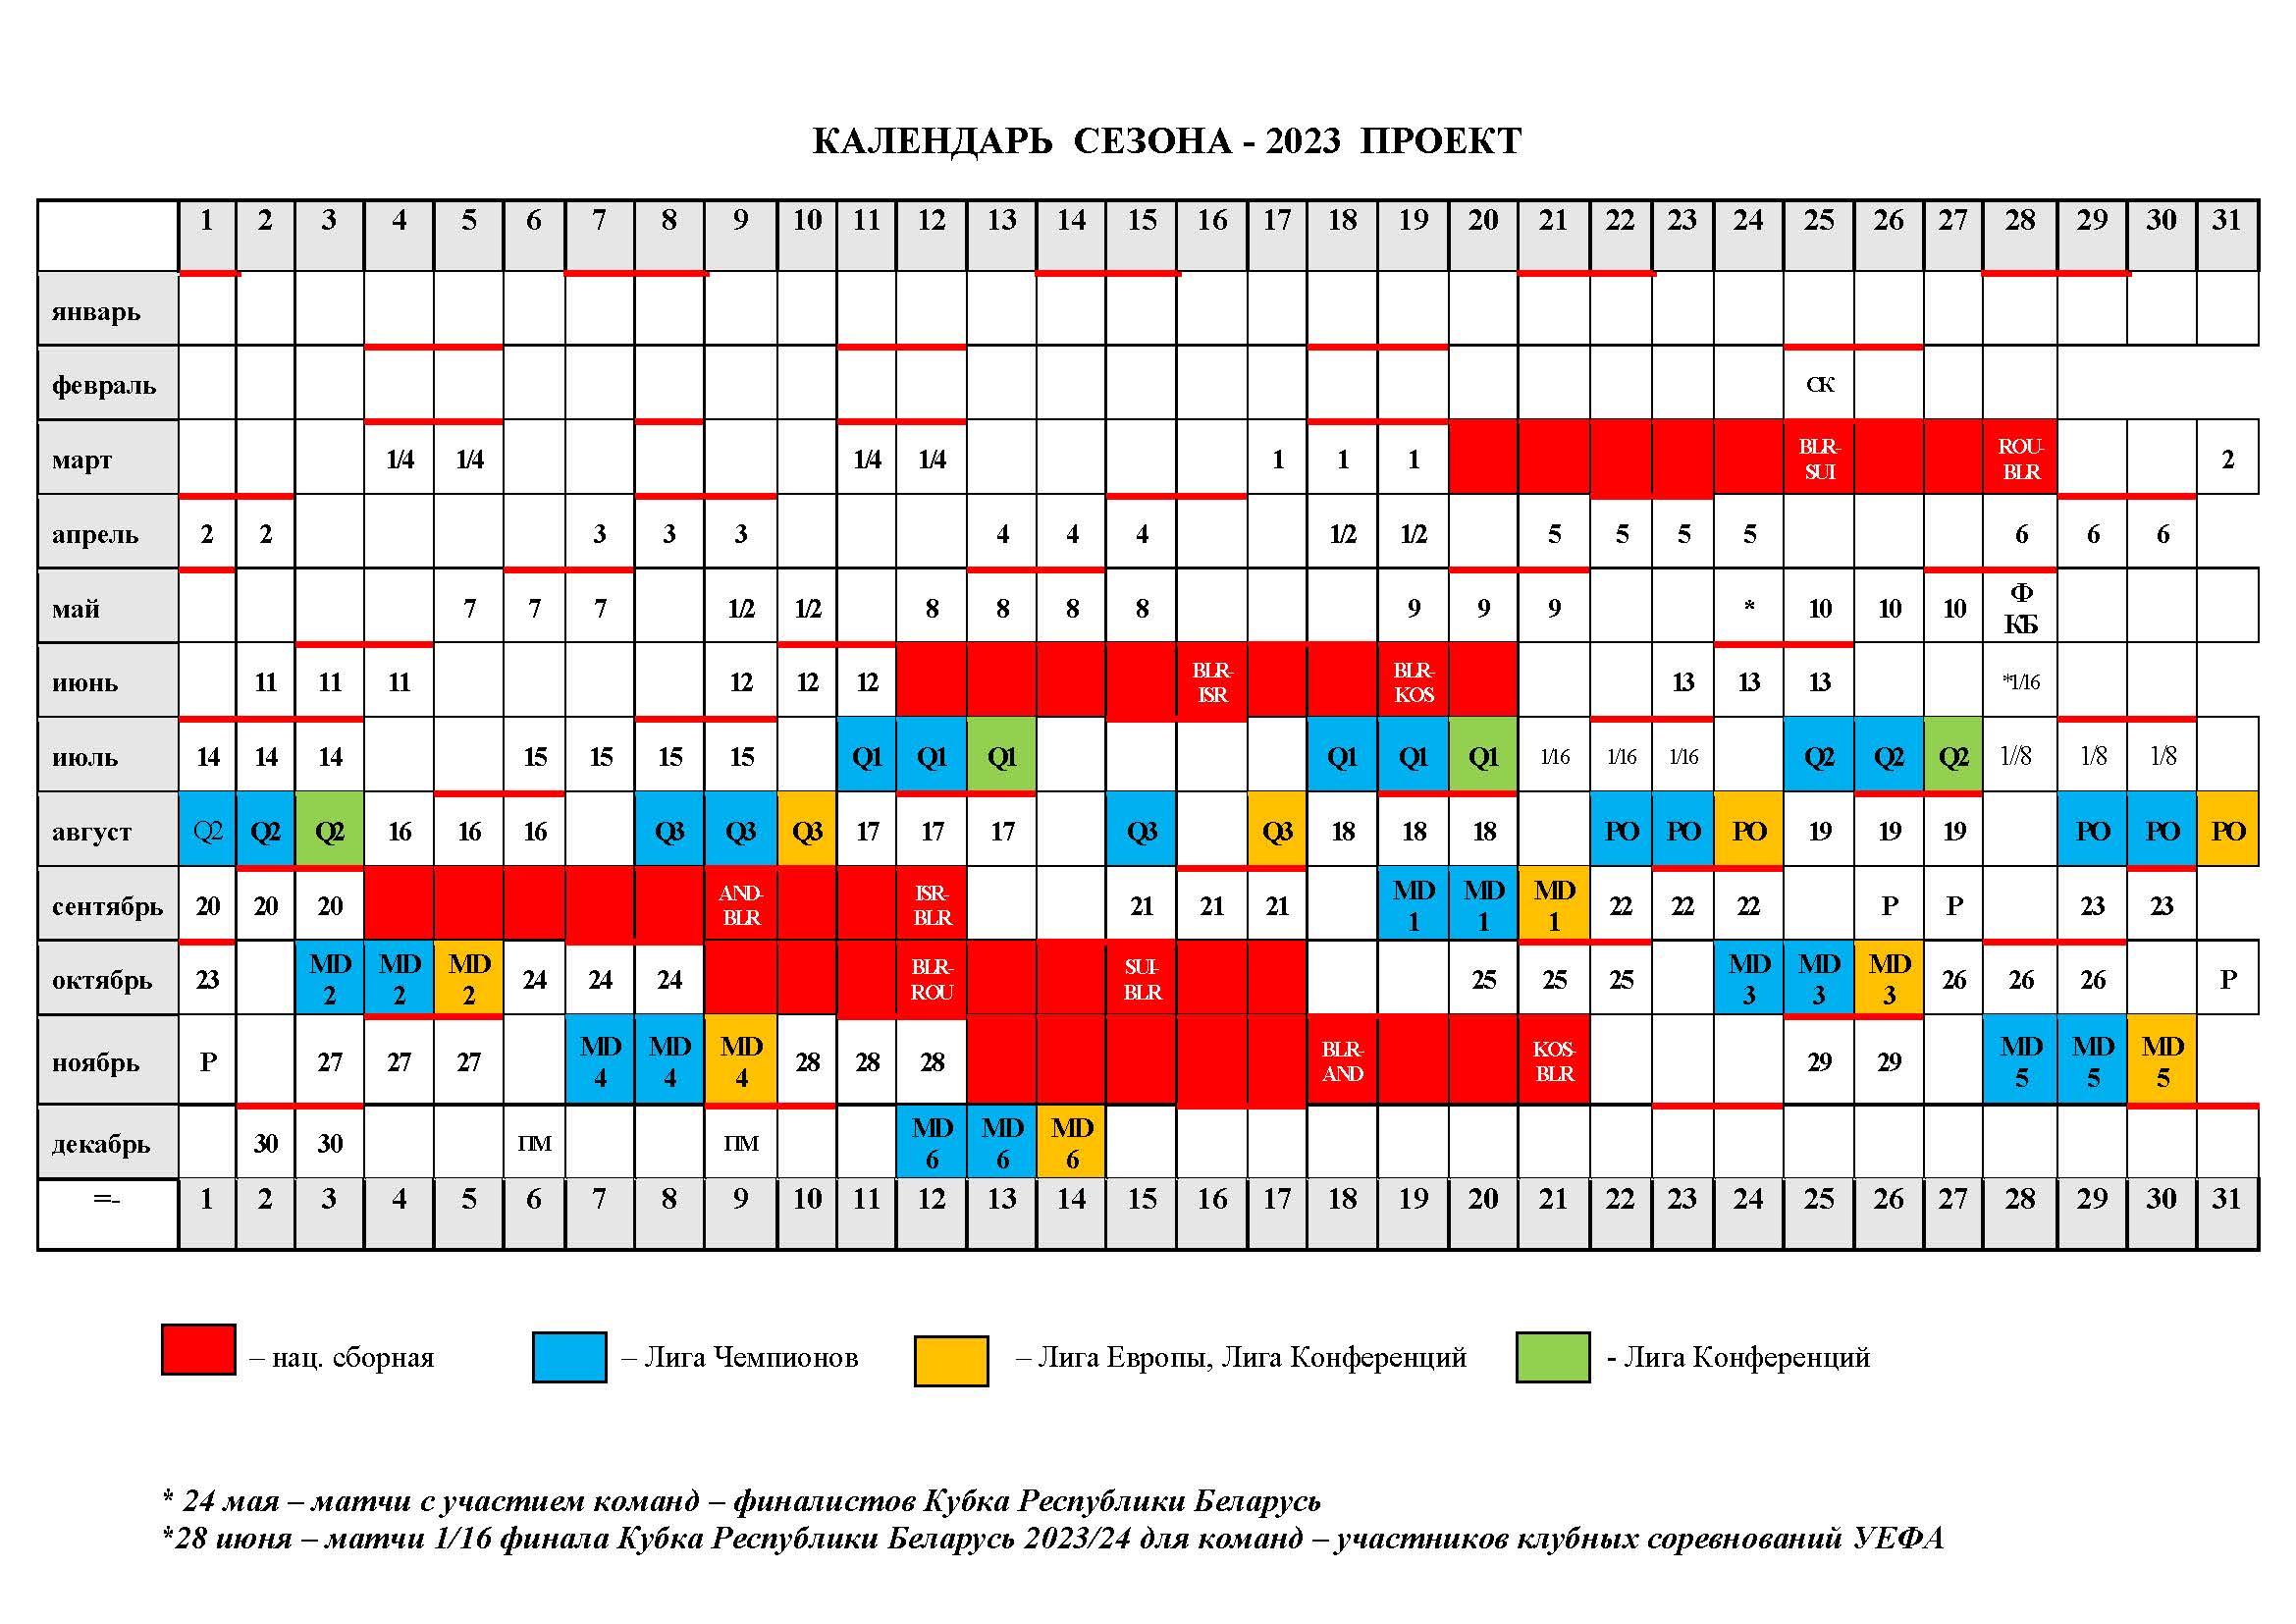 Кубок рпл 2023 расписание матчей. Календарь проекта. Высшая лига 2023.